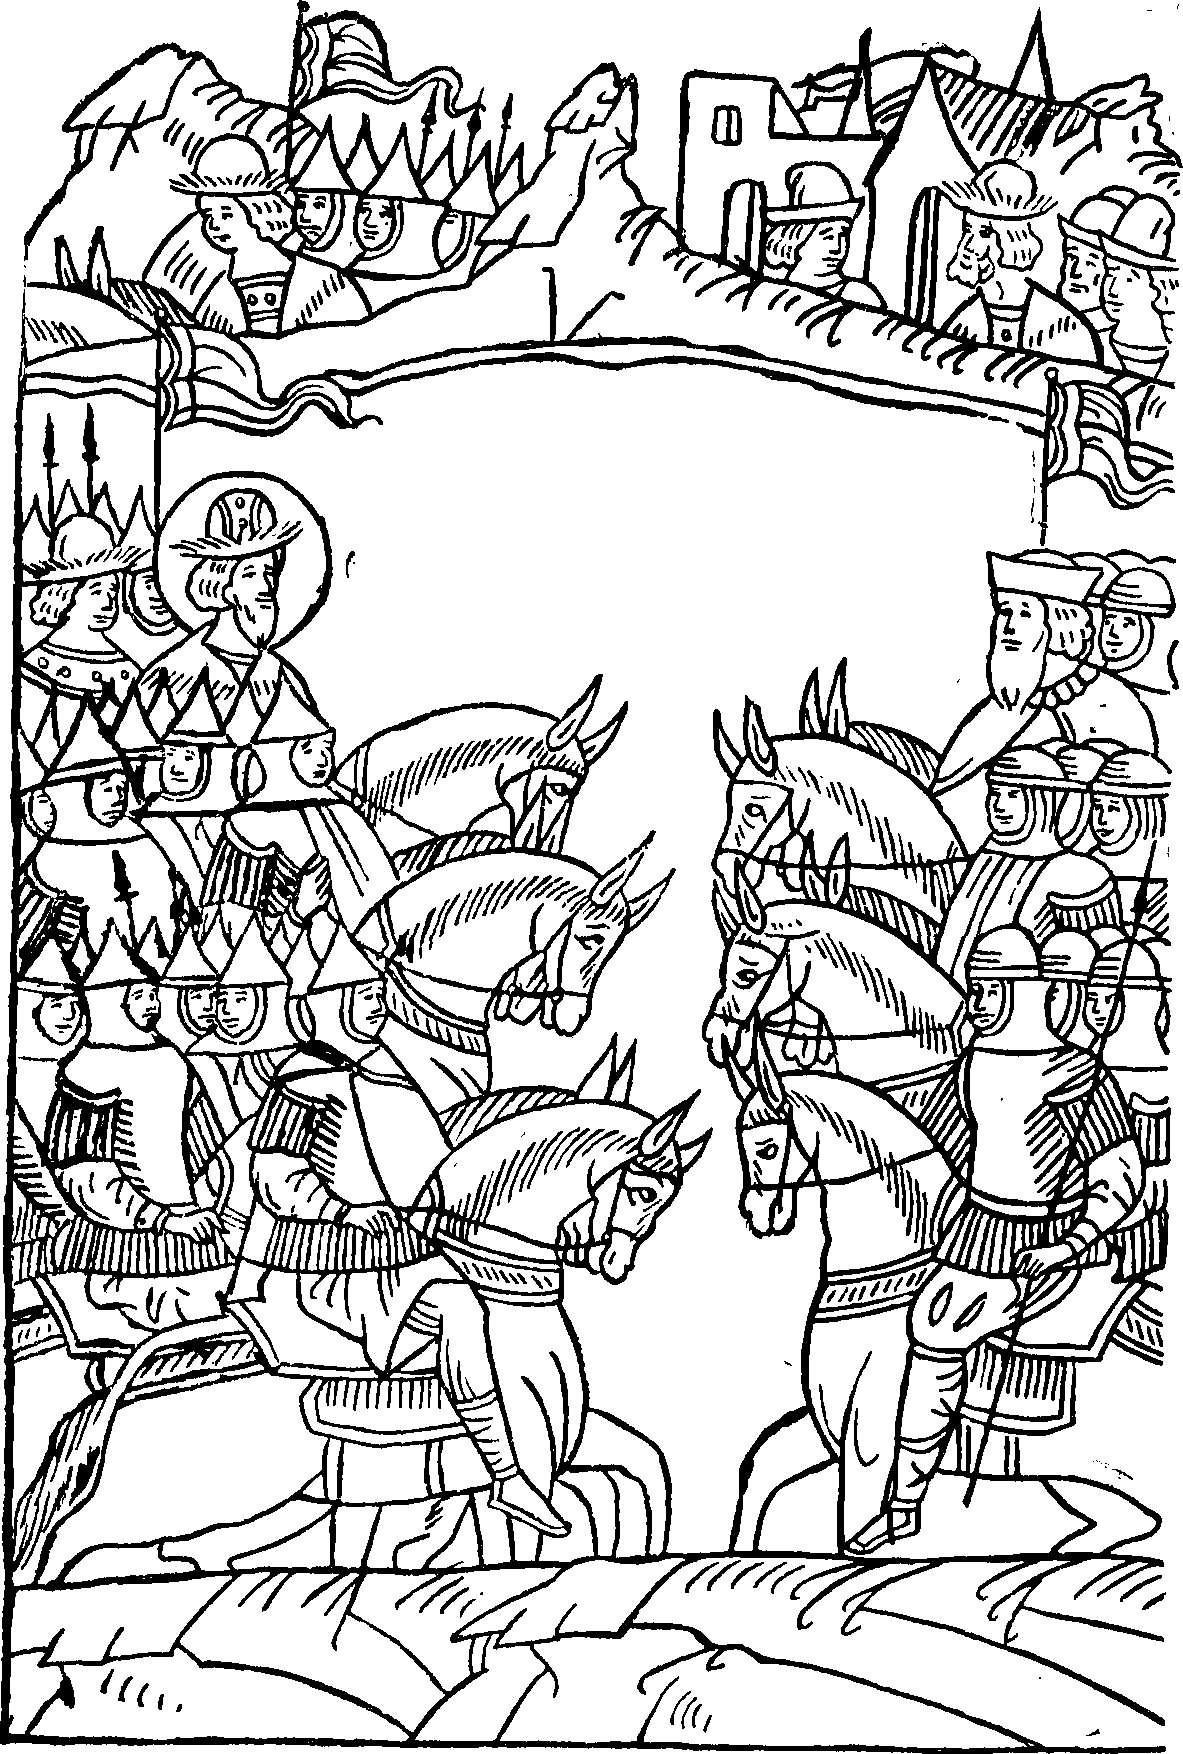 Встреча новгородского и рыцарского войска на льду Чудского озера (миниатюра)